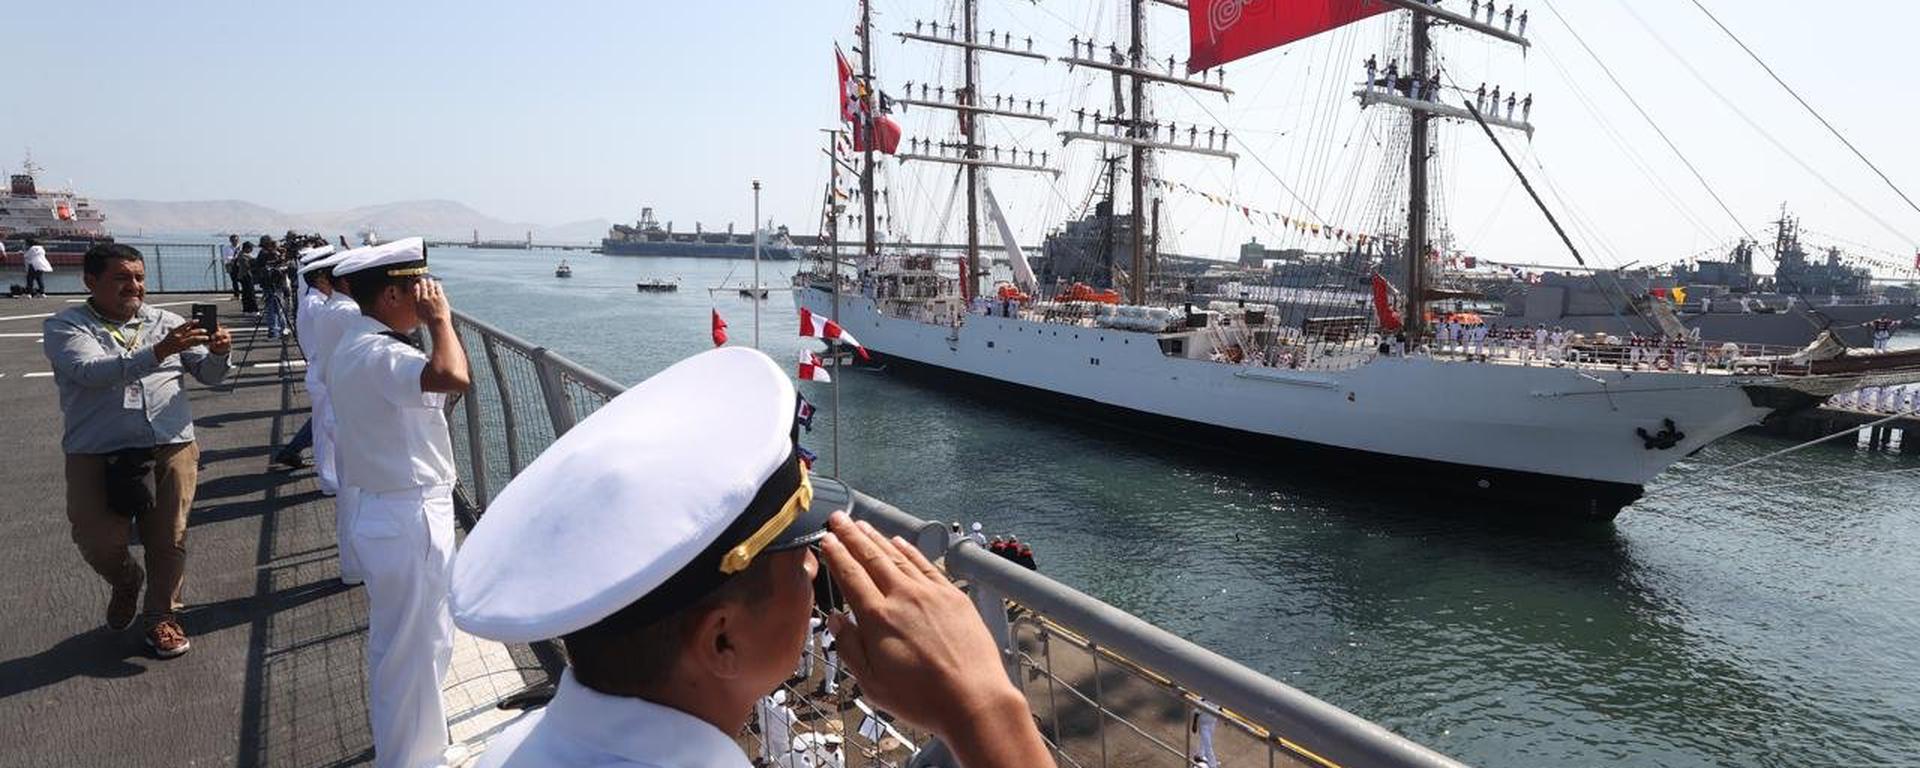 BAP Unión arribó al Callao luego de visitar 23 puertos del mundo: así se celebro su histórico retorno